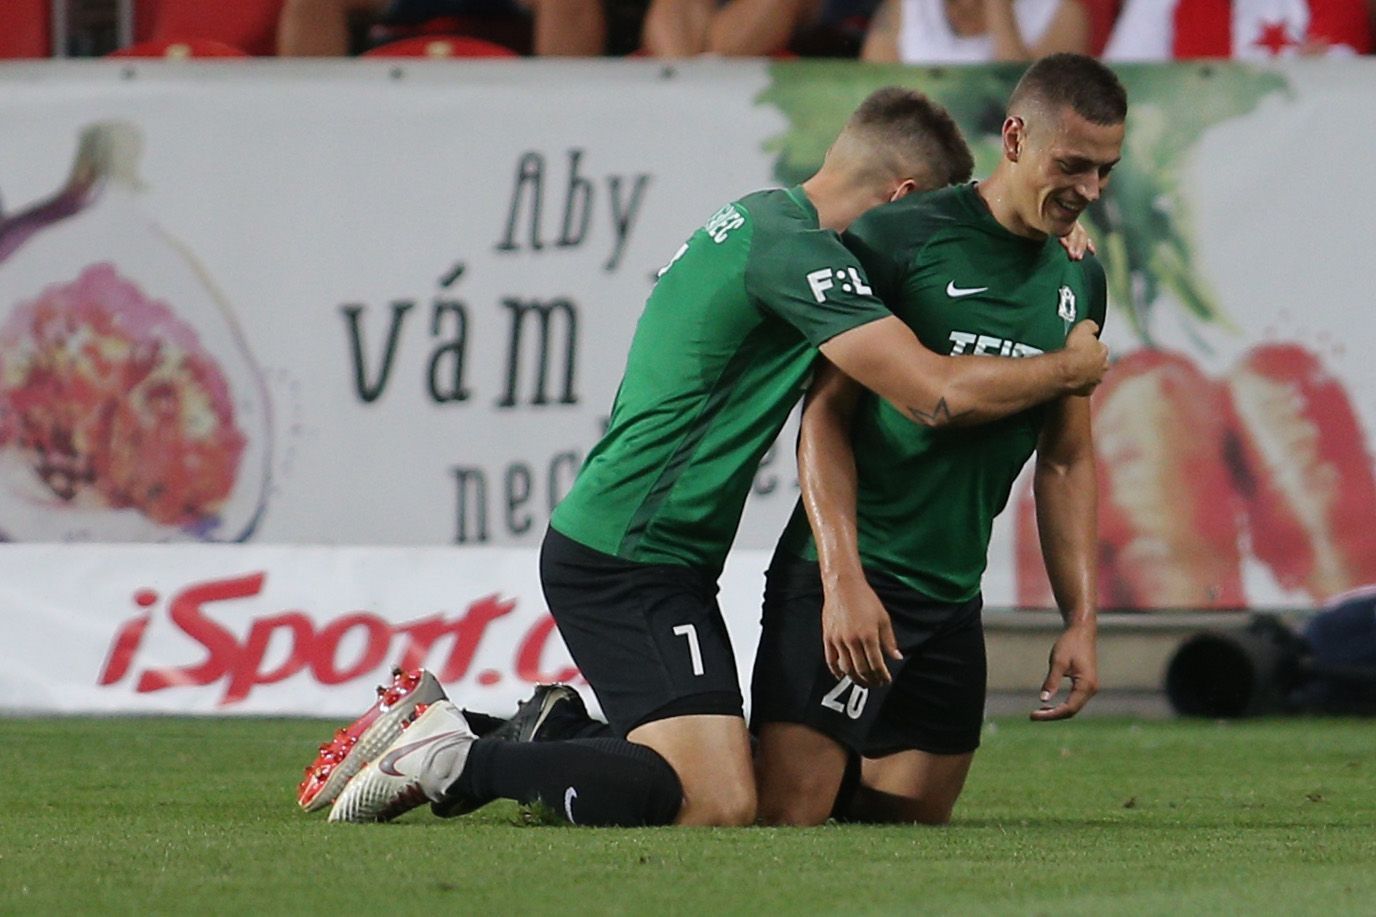 5. kolo fotbalové FORTUNA:LIGY, Slavia - Jablonec: Tomáš Holeš (vpravo) a Jakub Považanec slaví gól Jablonce.